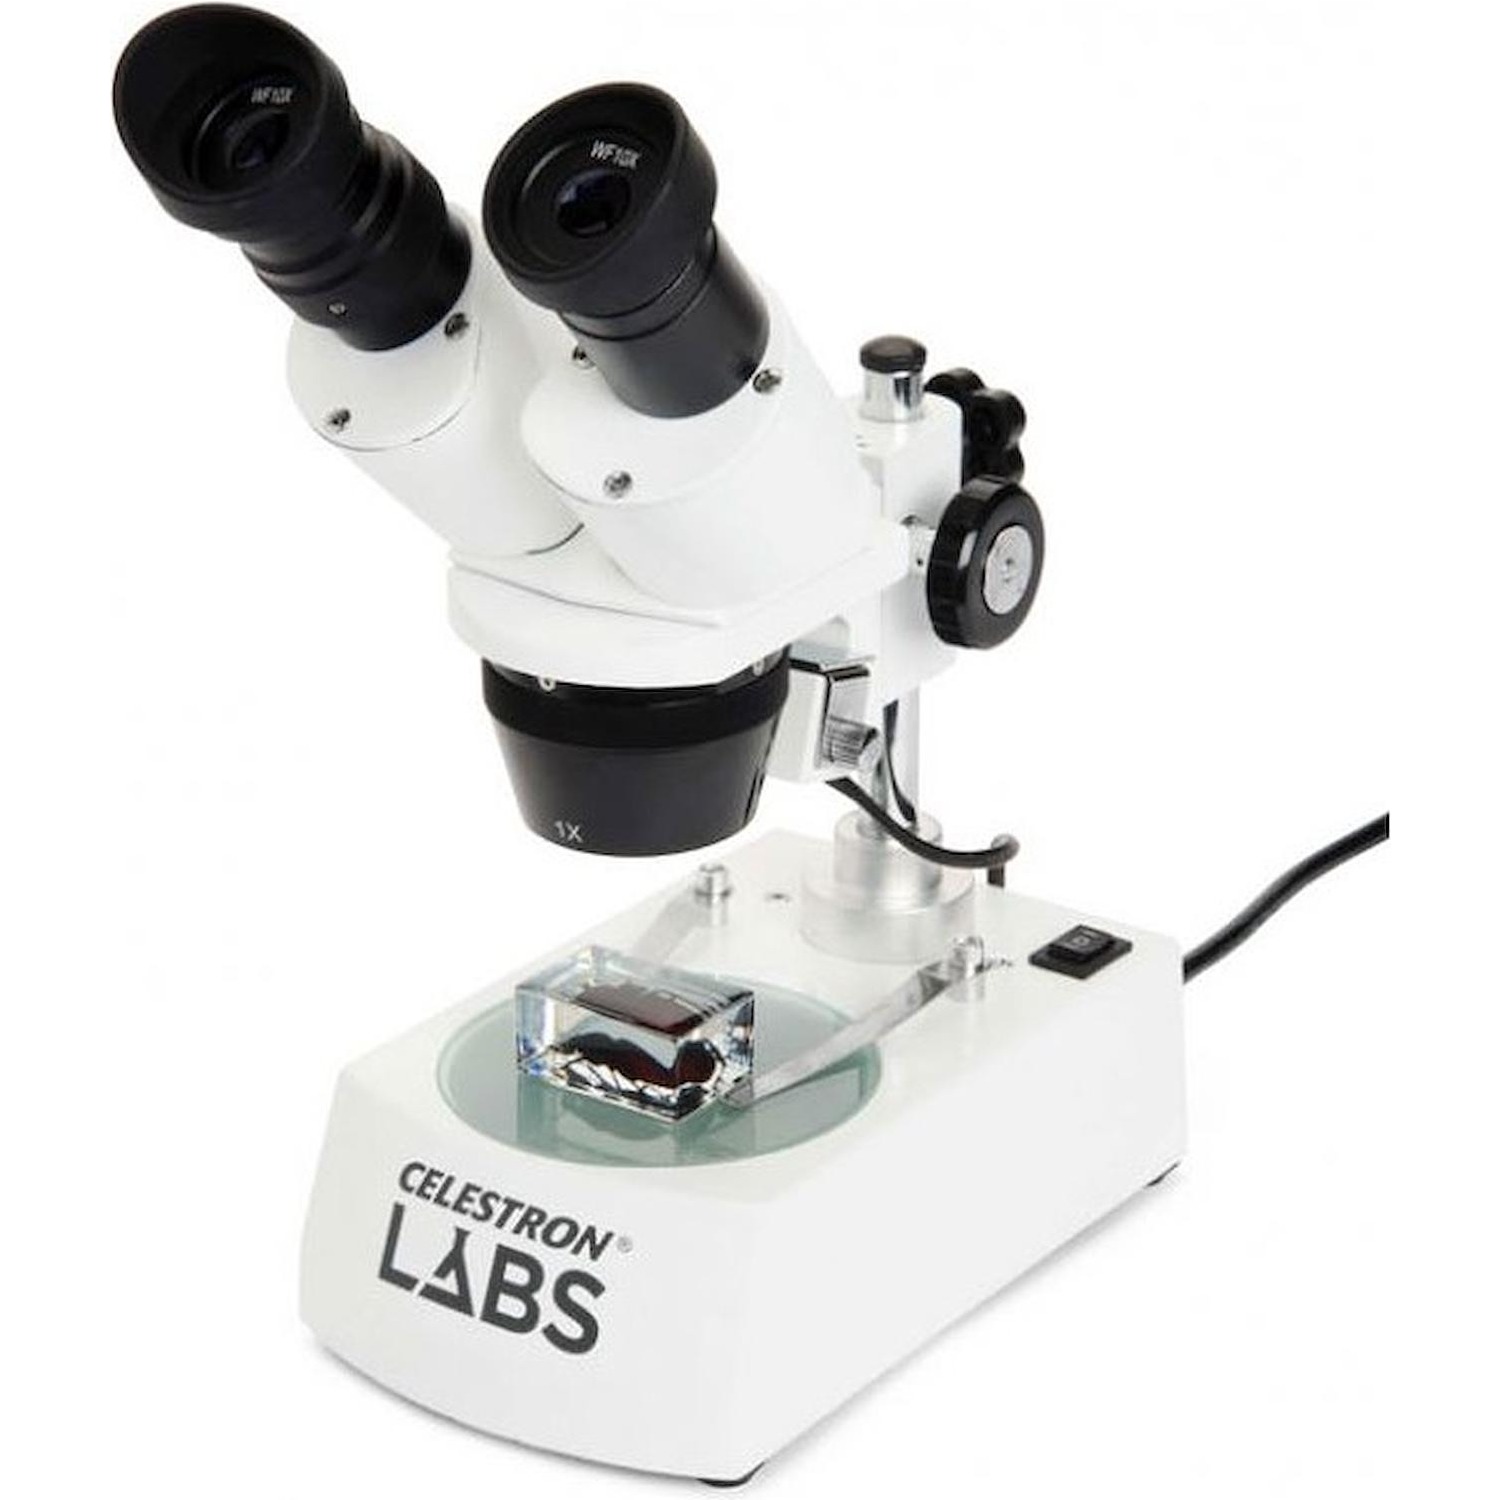 Immagine per Microscopio Celestron Labs S10-60 CM44208-DS da DIMOStore